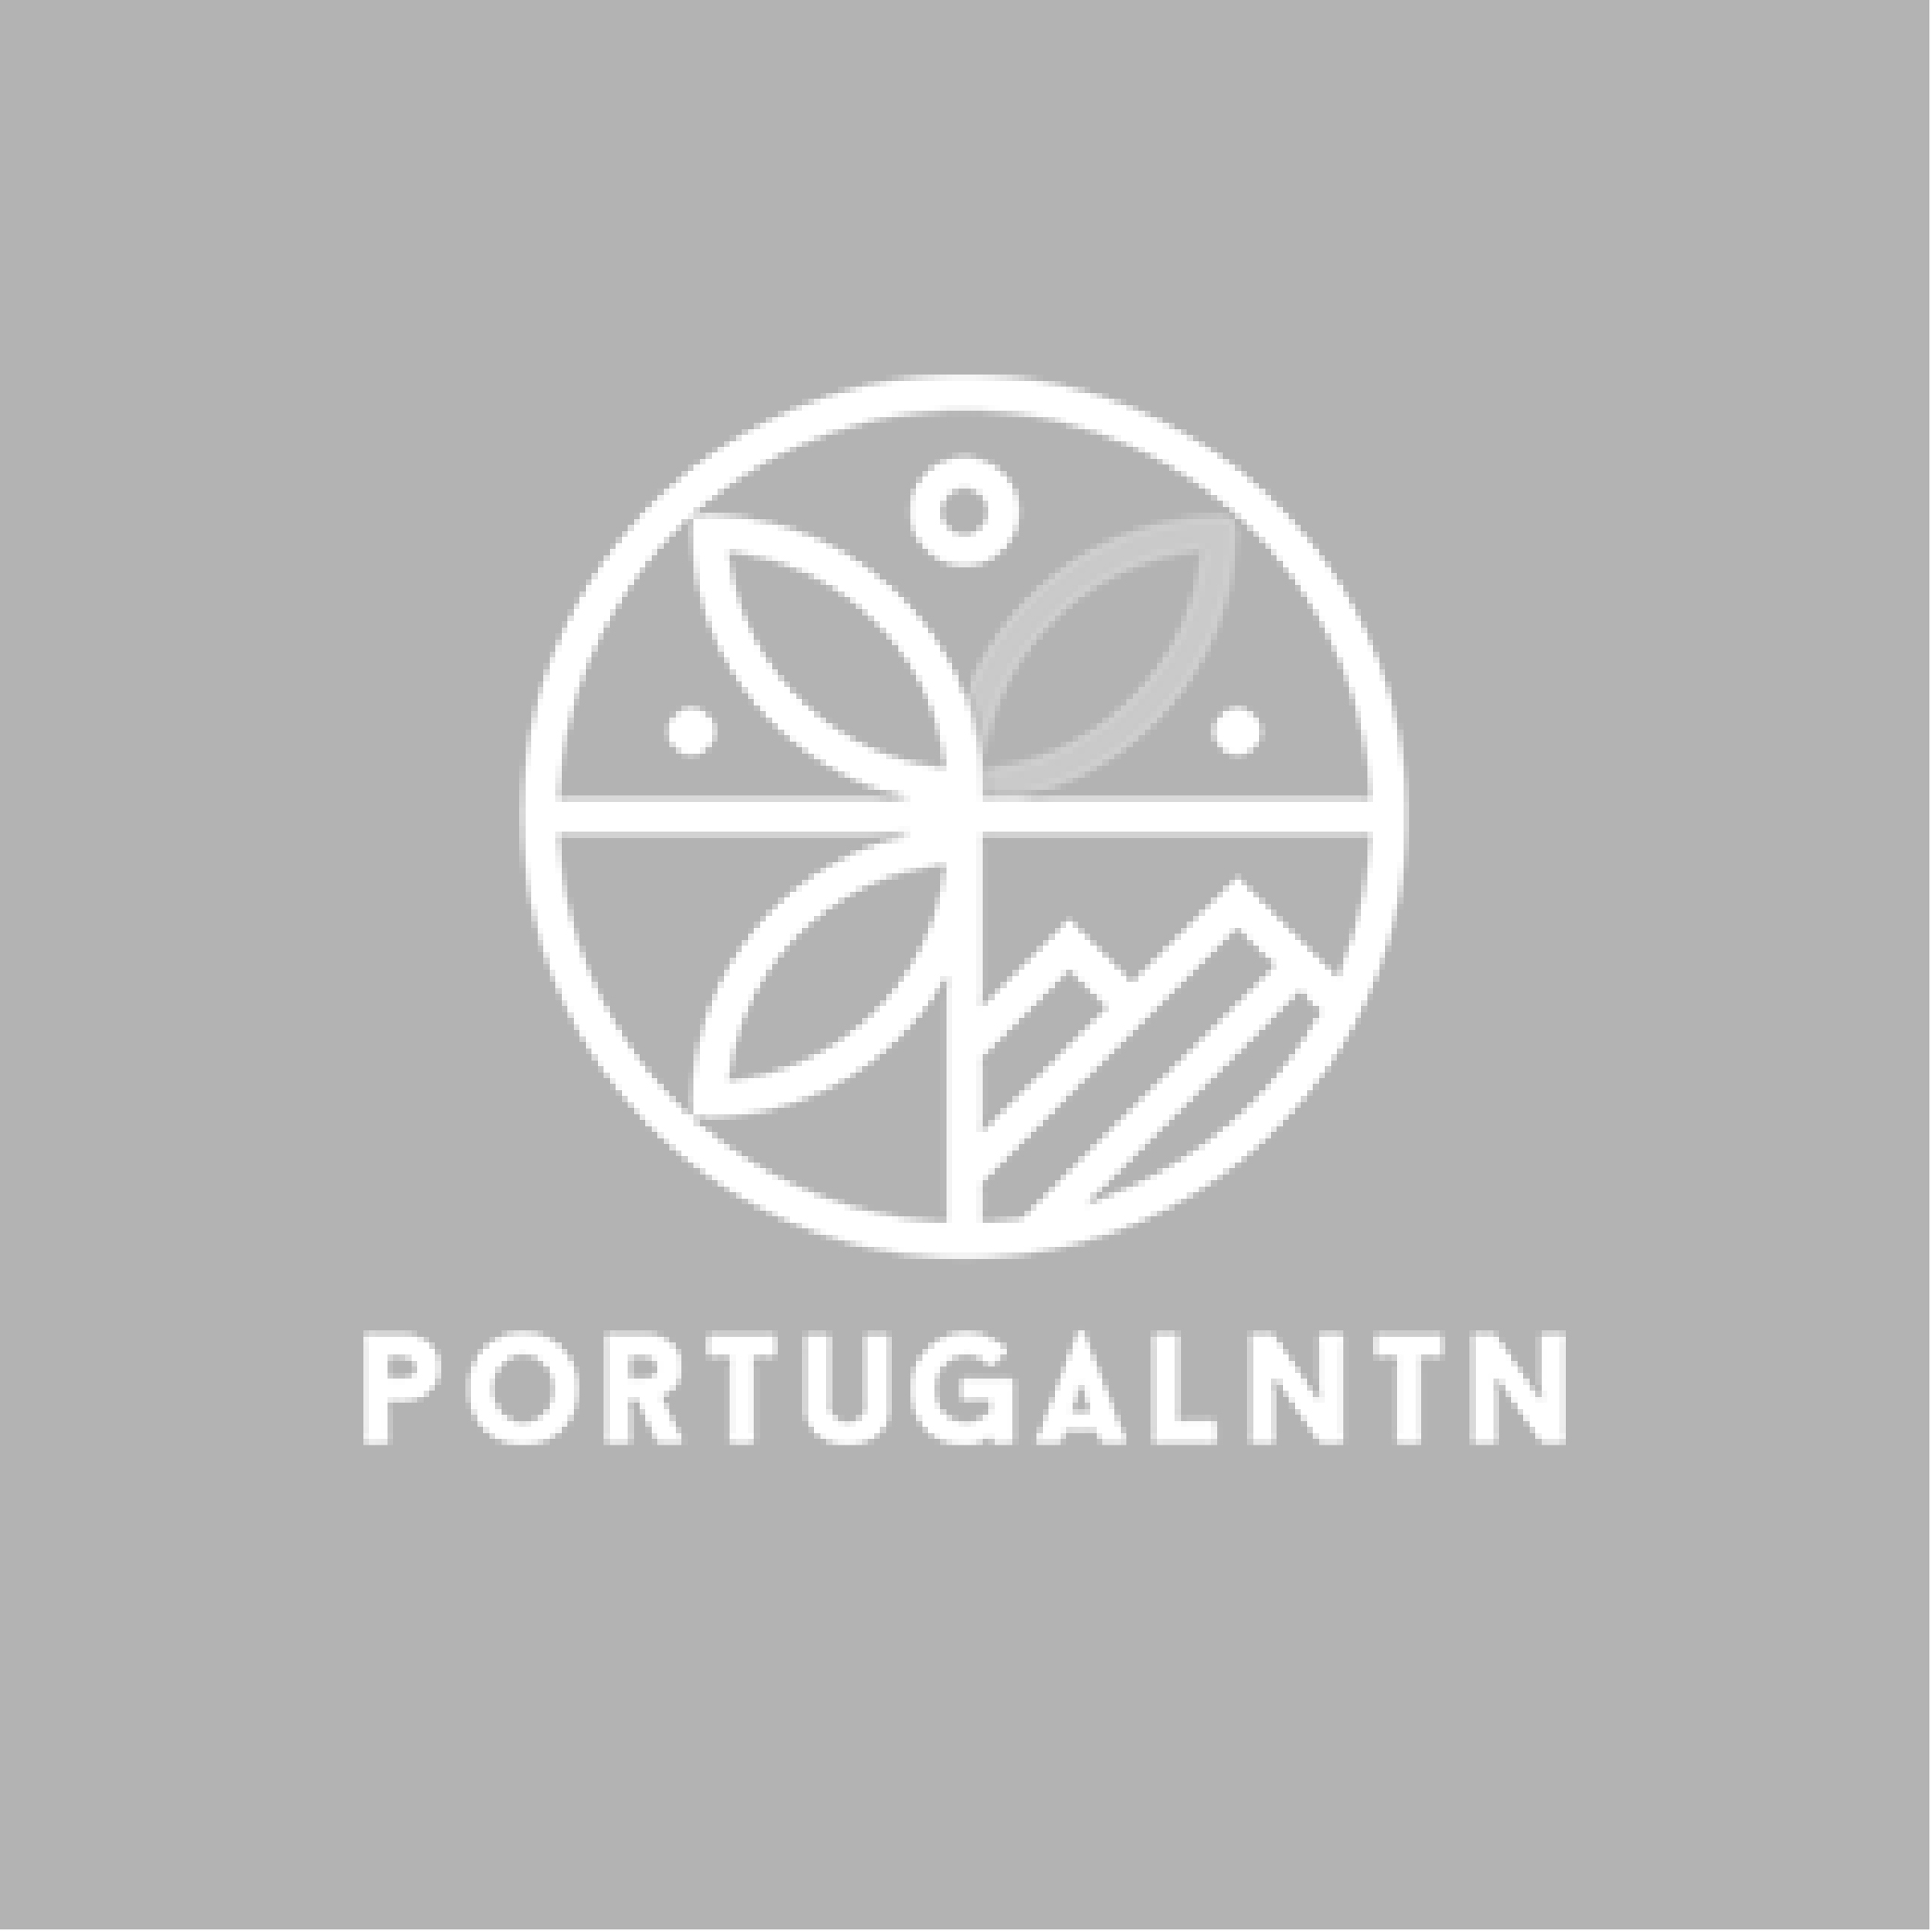 NATURTHOUGHTS – Turismo de Natureza, Lda – Mudou a denominação para PORTUGALNTN